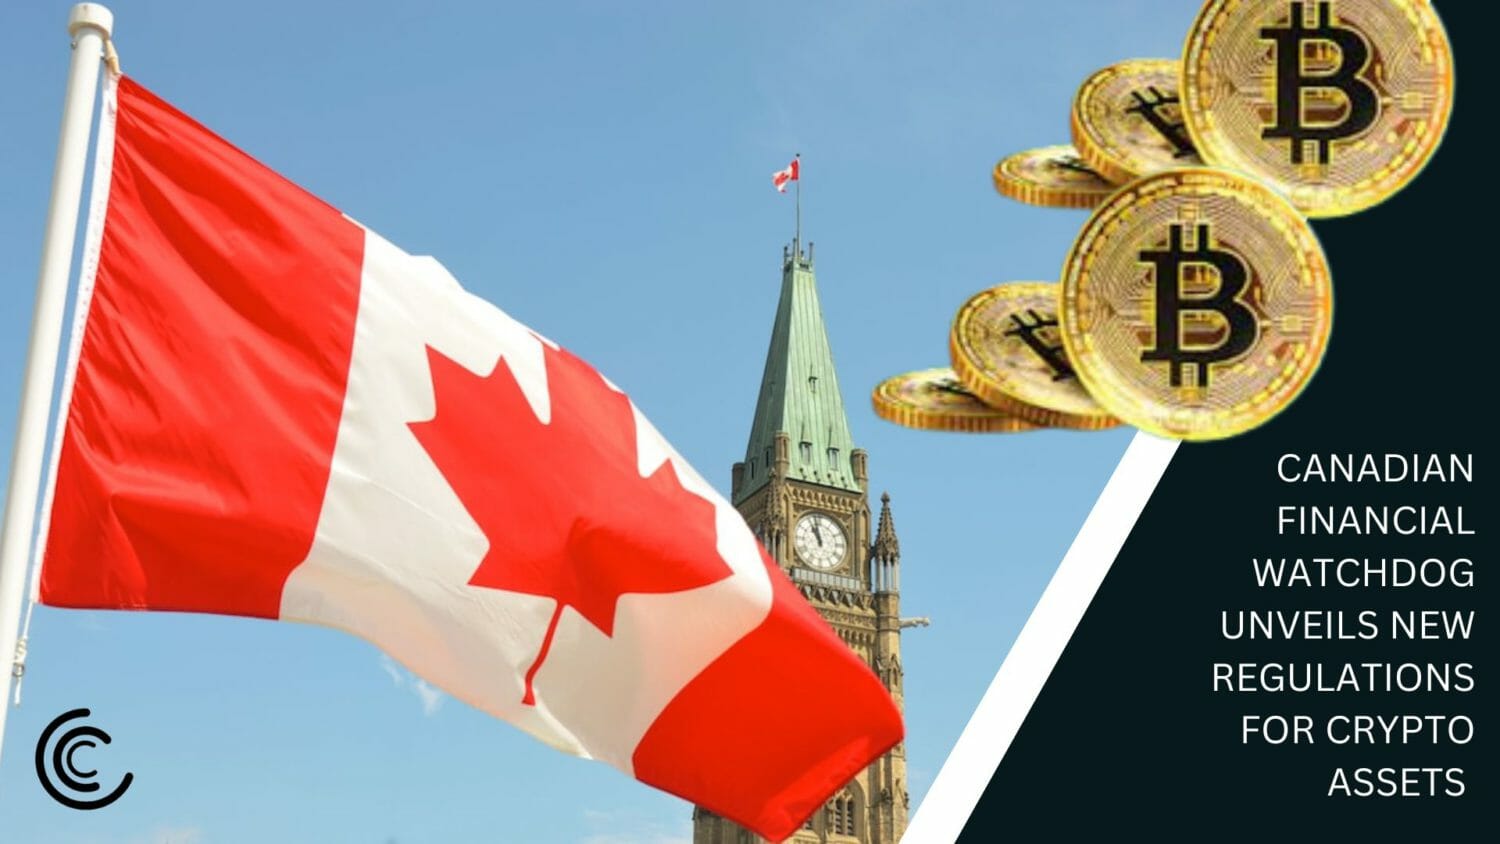 Canadian Financial Watchdog afslører nye regler for kryptoaktiver